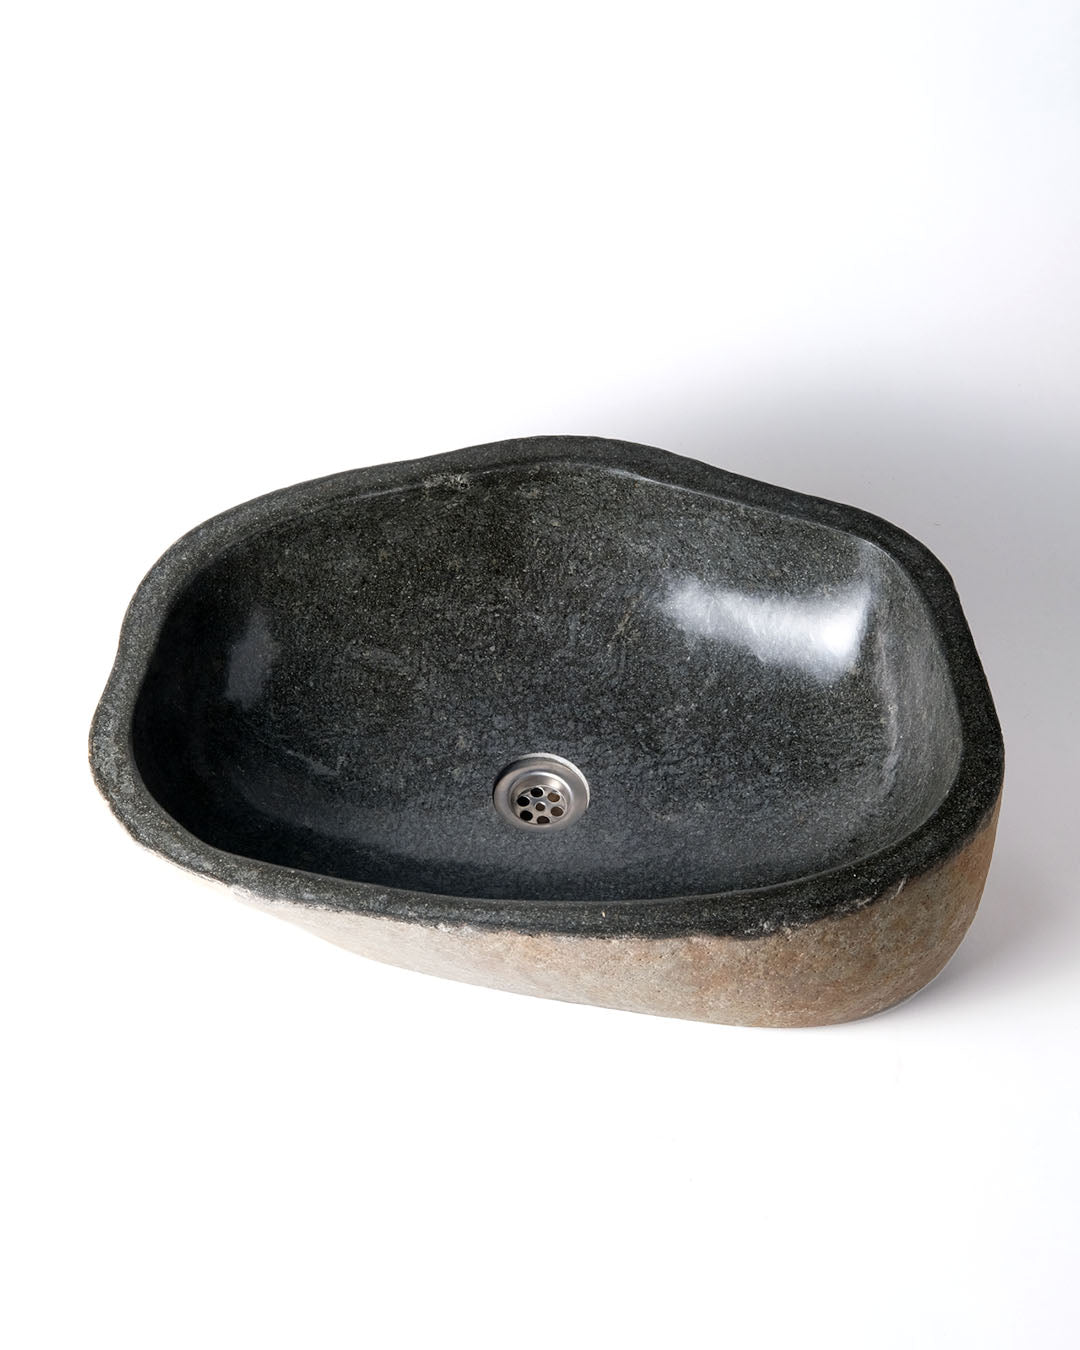 Sanur stone sink